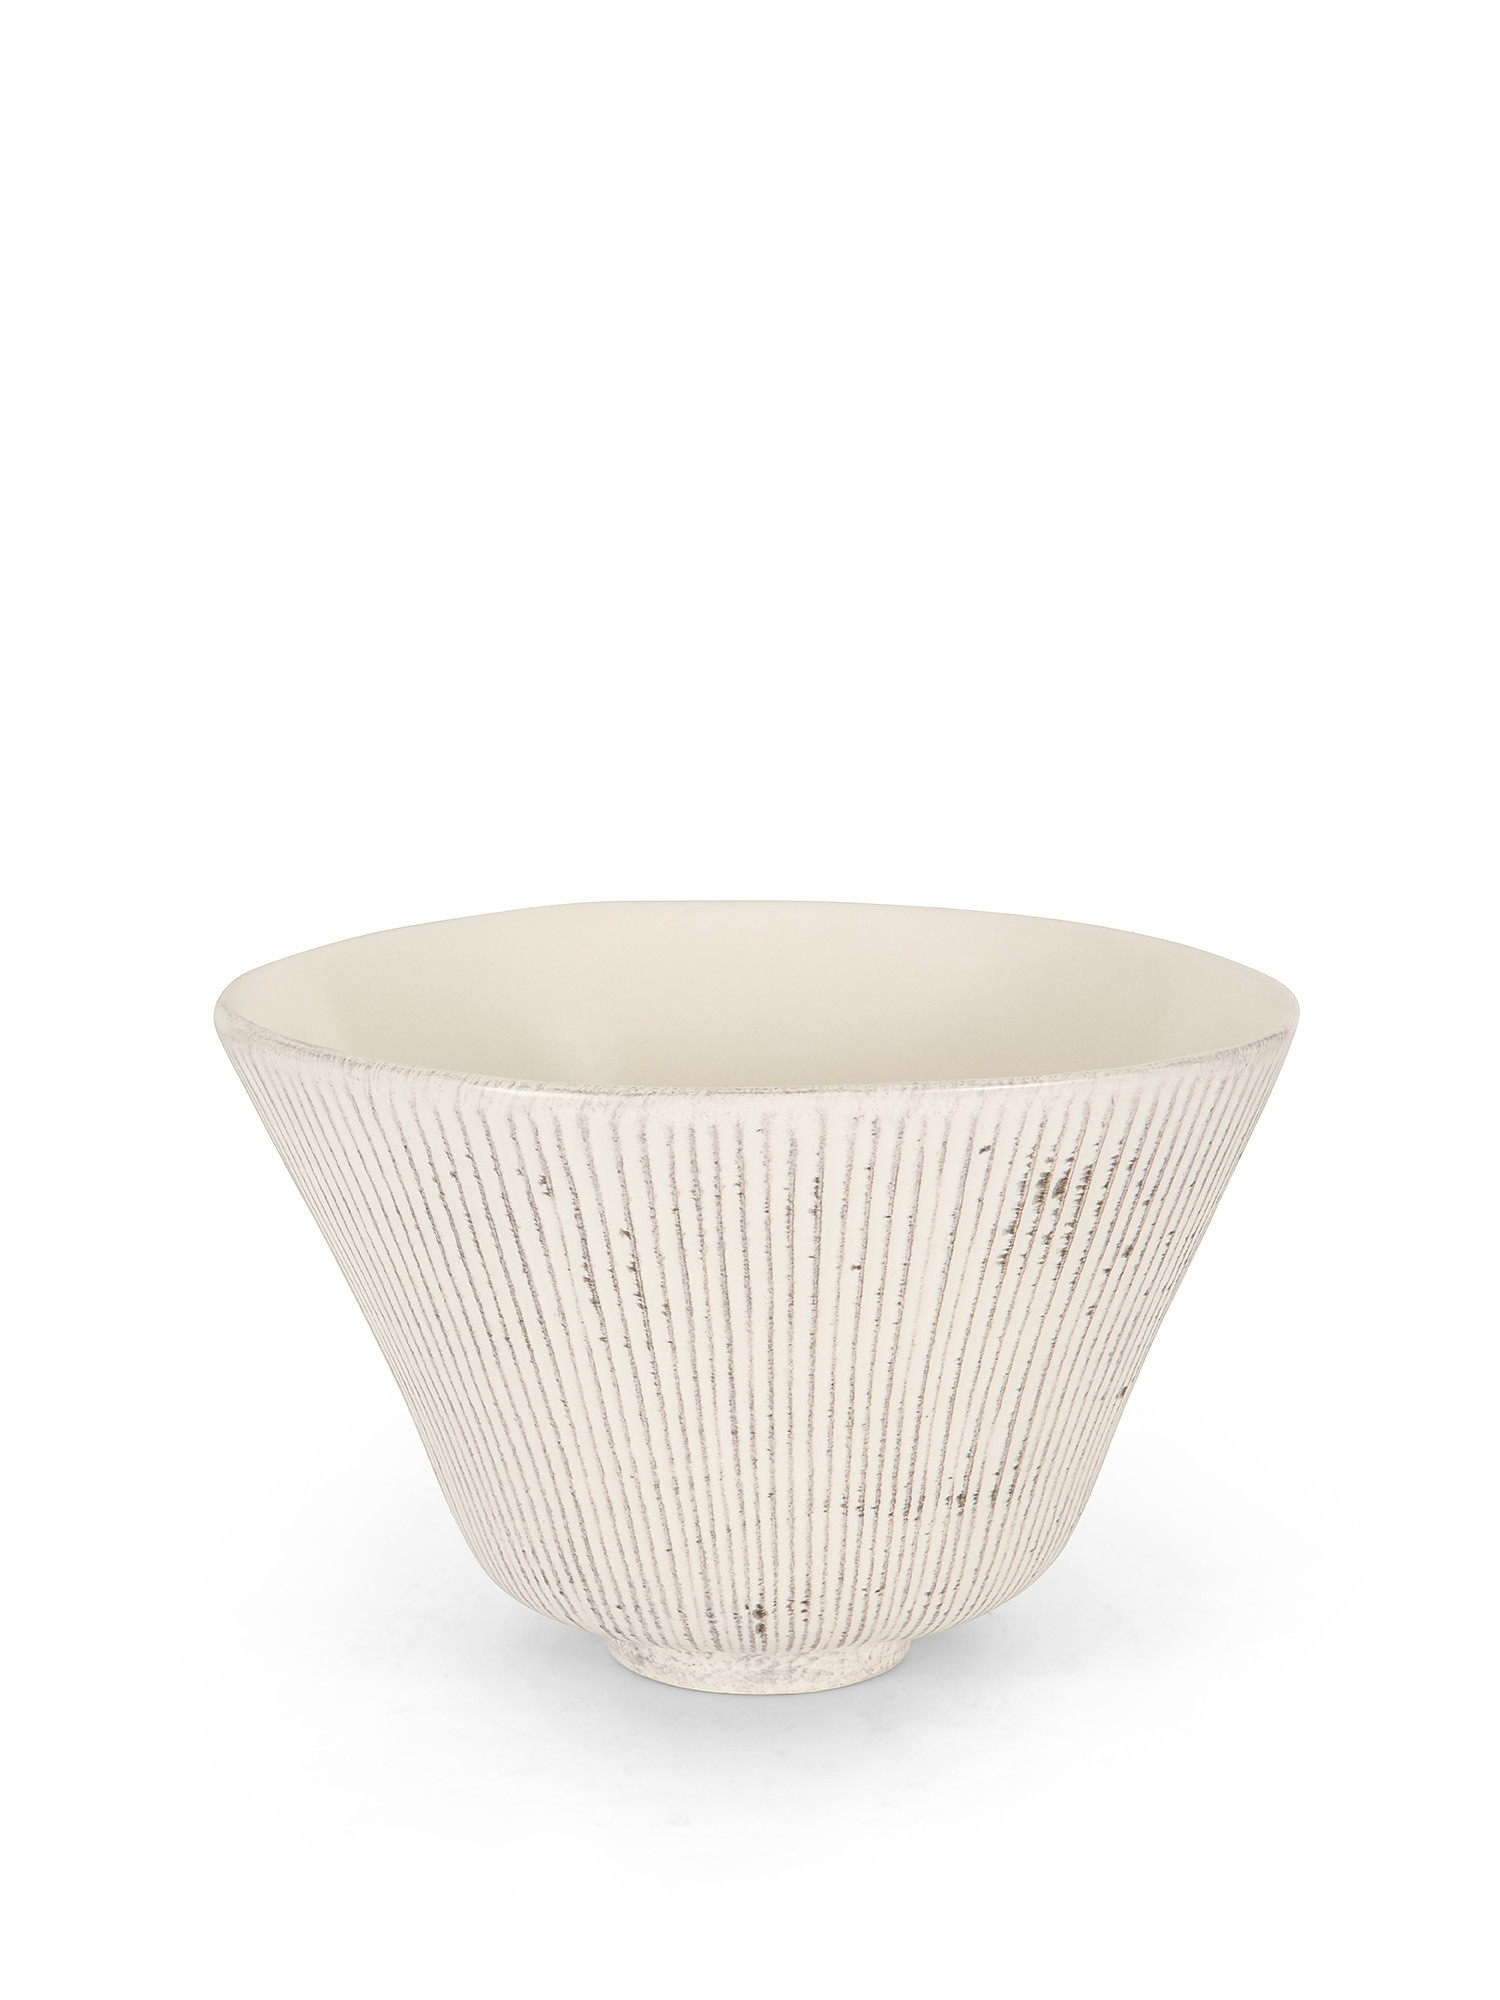 Coppa ceramica effetto rigato, Bianco, large